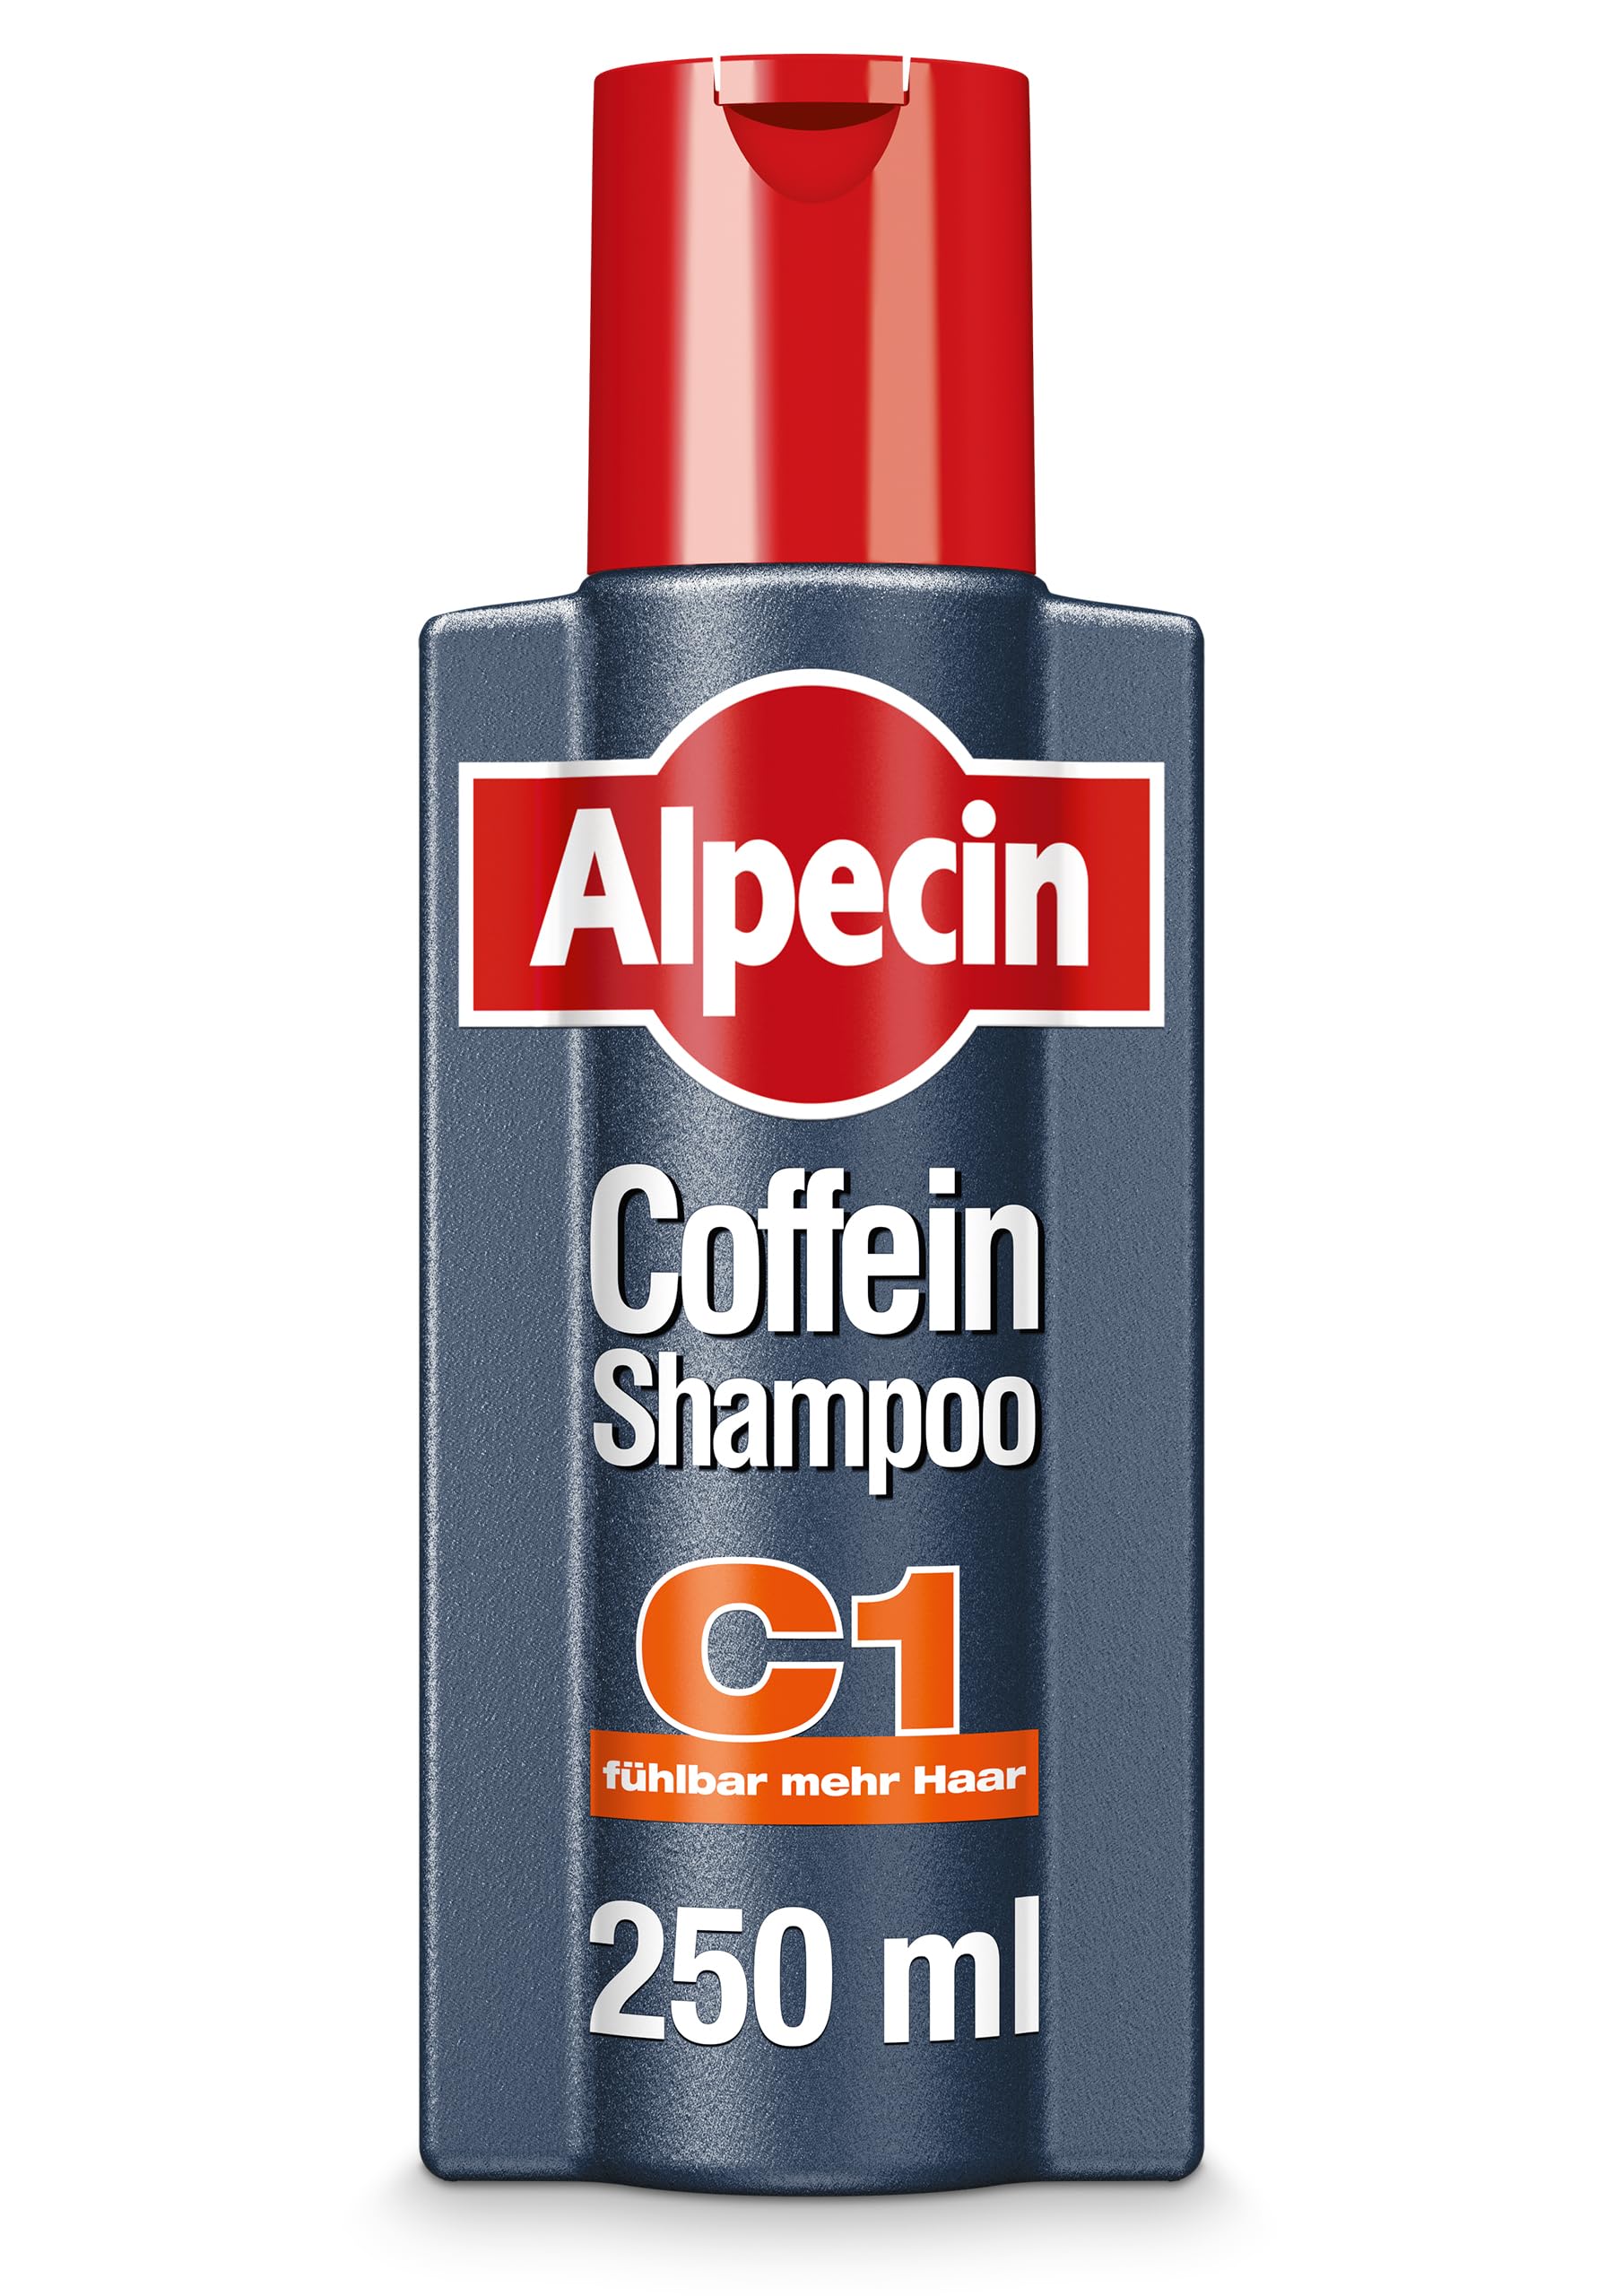 alpecin szampon c1 opinie